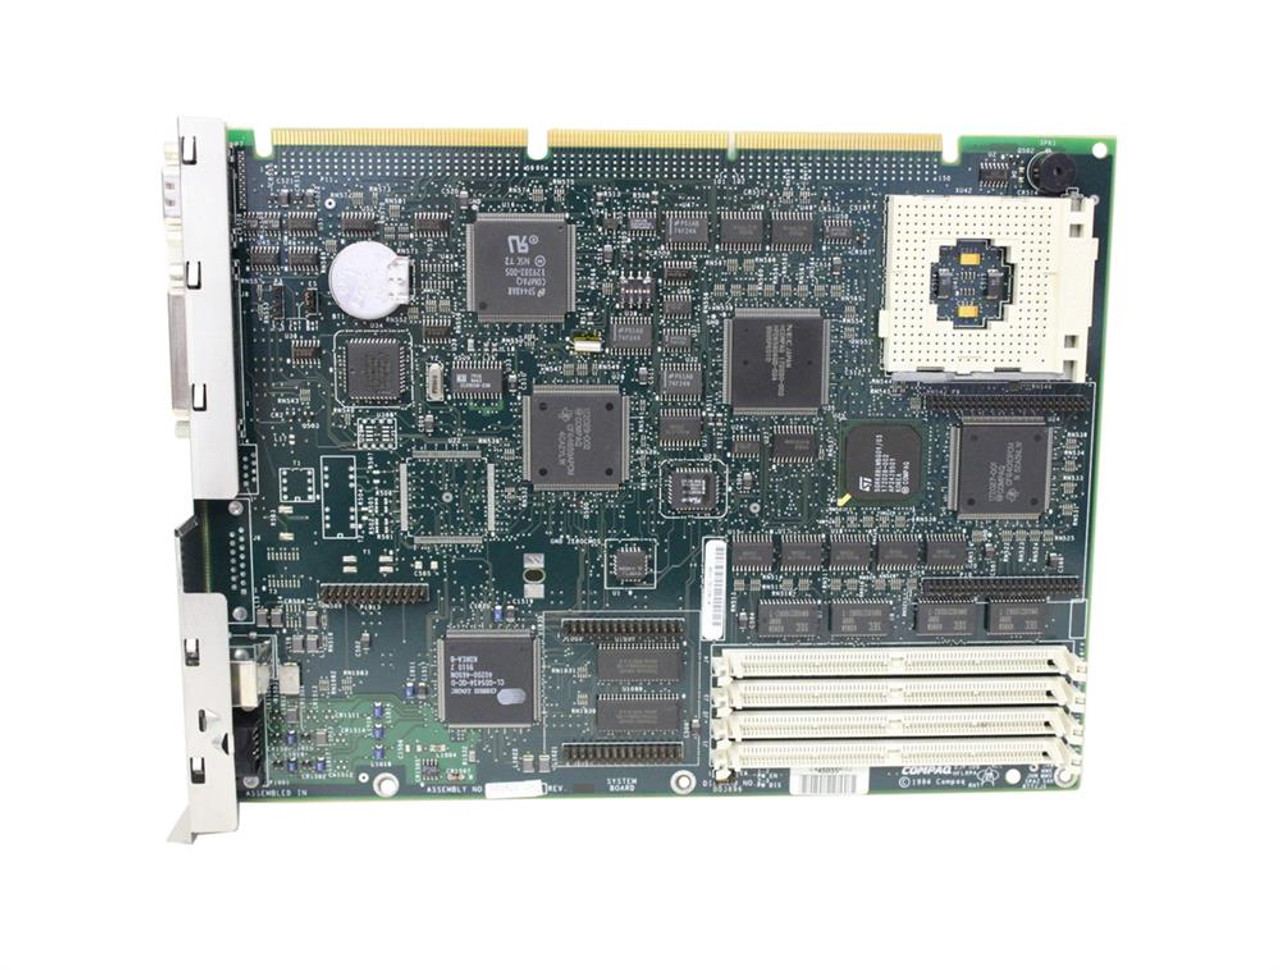 172620-001 Compaq System Board (Motherboard) for Deskpro 486 (Refurbished)